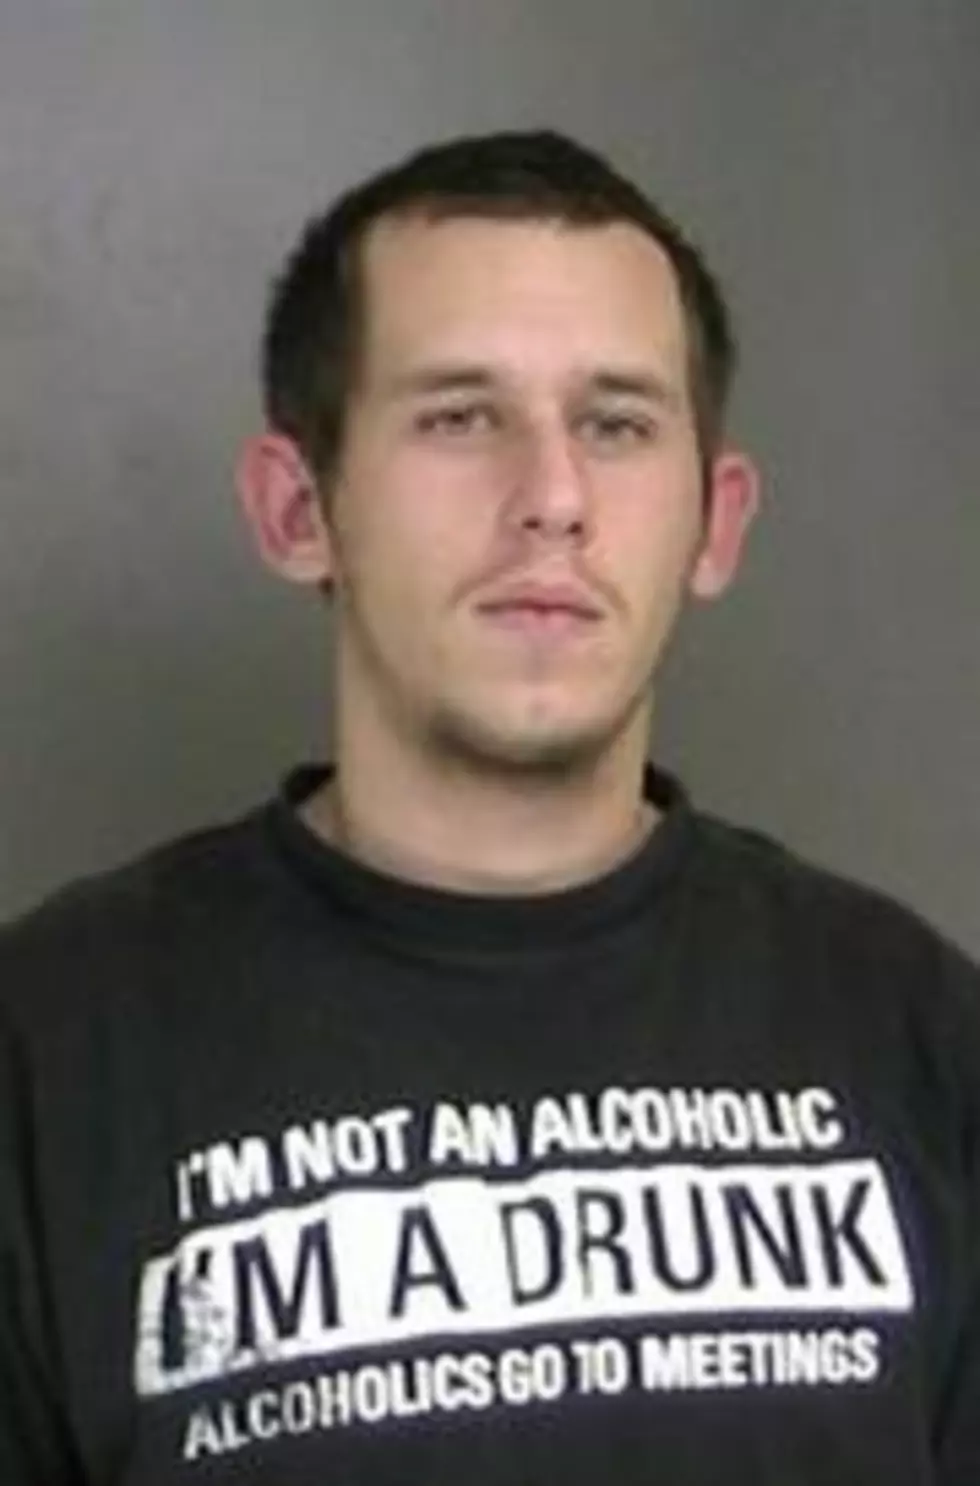 Man Wearing &#8216;I&#8217;m a Drunk Shirt&#8217; Gets DUI